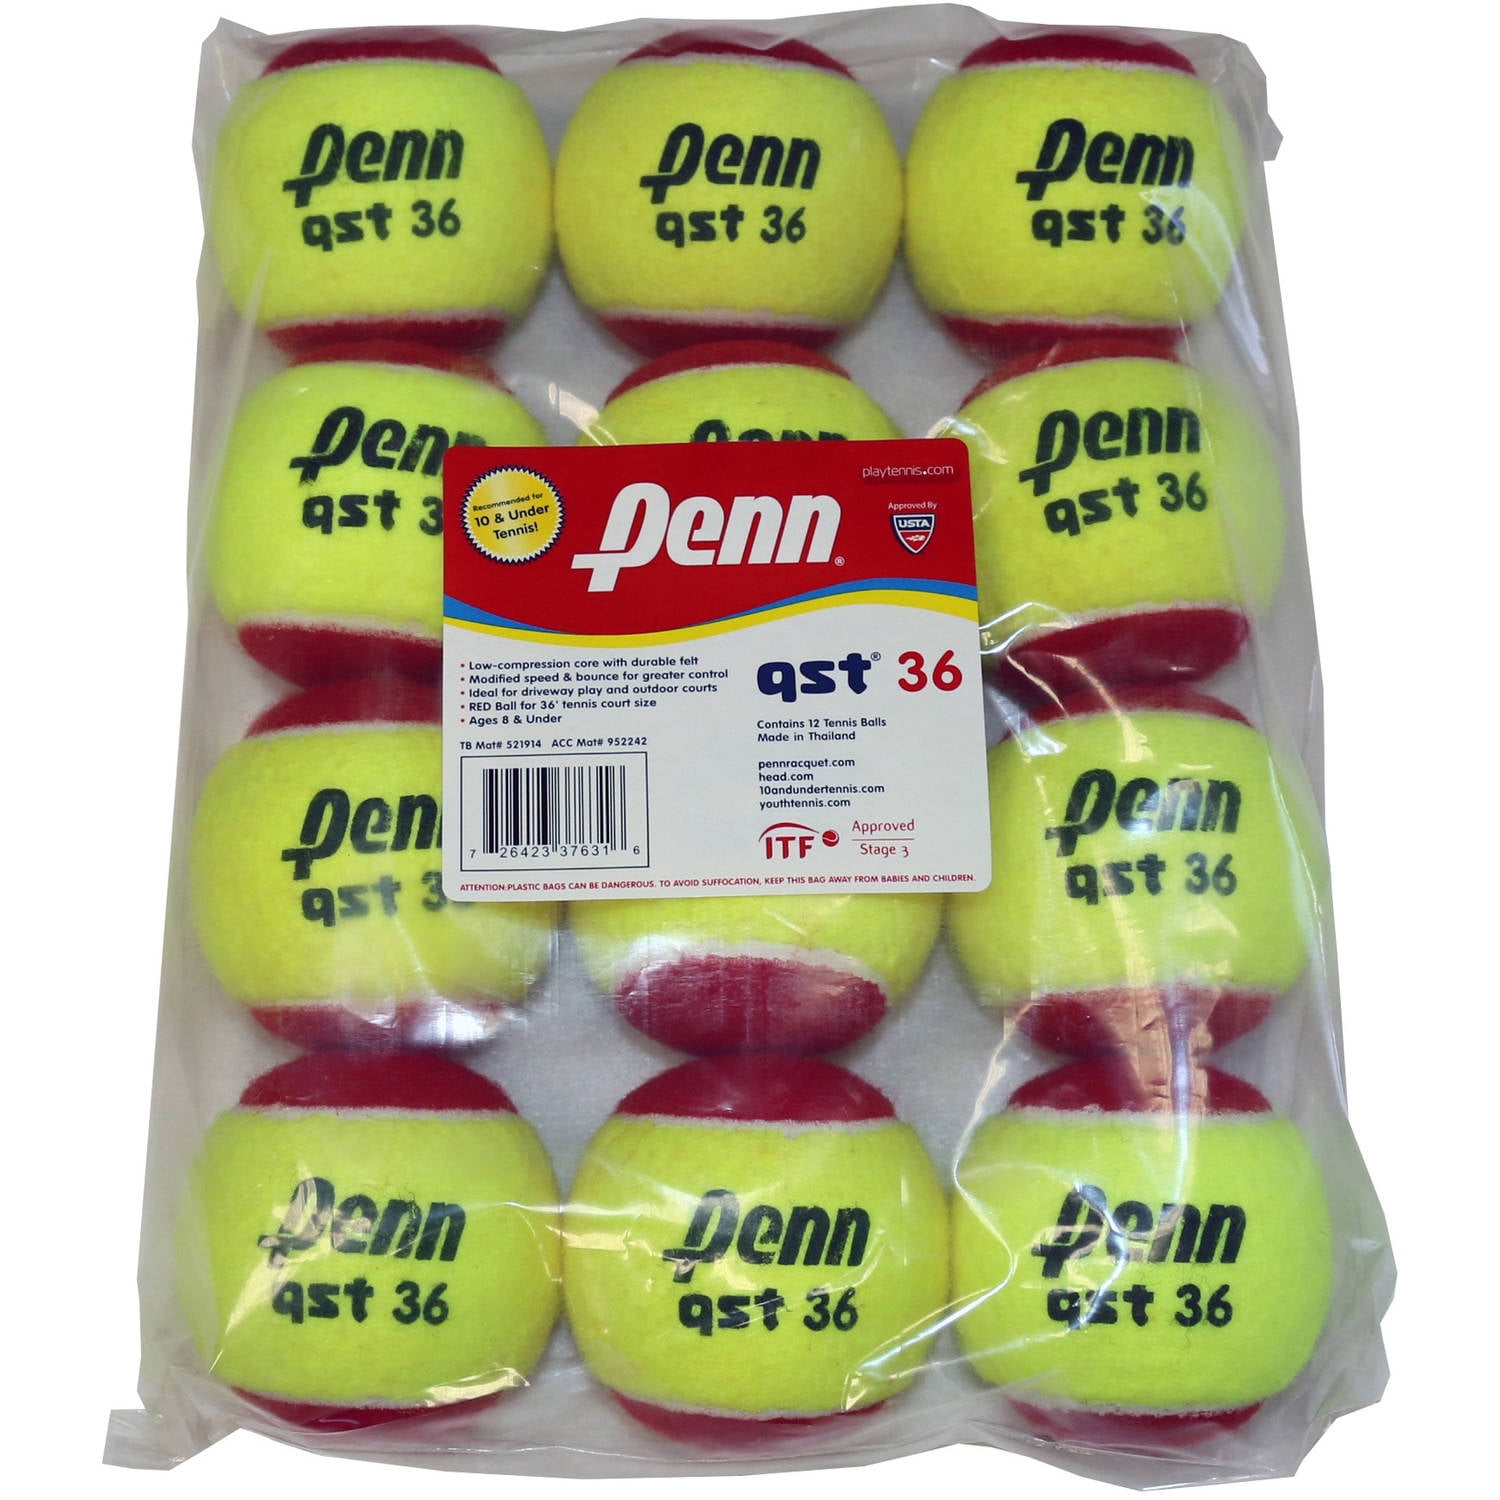 Penn QST 60 Felt Tennis Balls 12 Ball Polybag for sale online